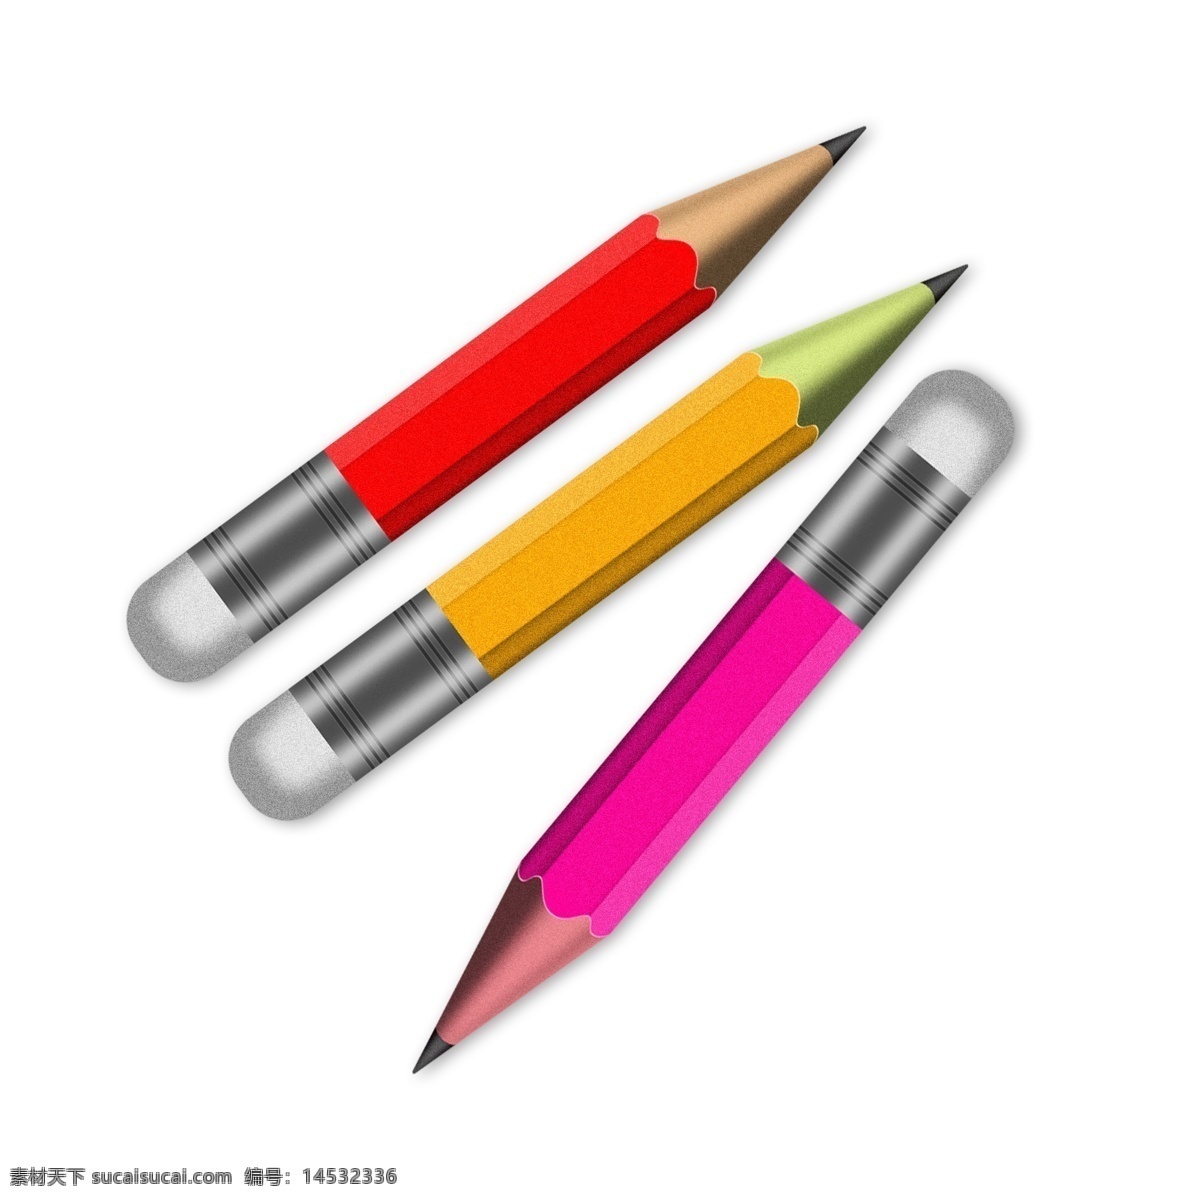 学习 工具 元素 不同 颜色 铅笔 学习用品 学习元素 铅笔素材 铅笔元素